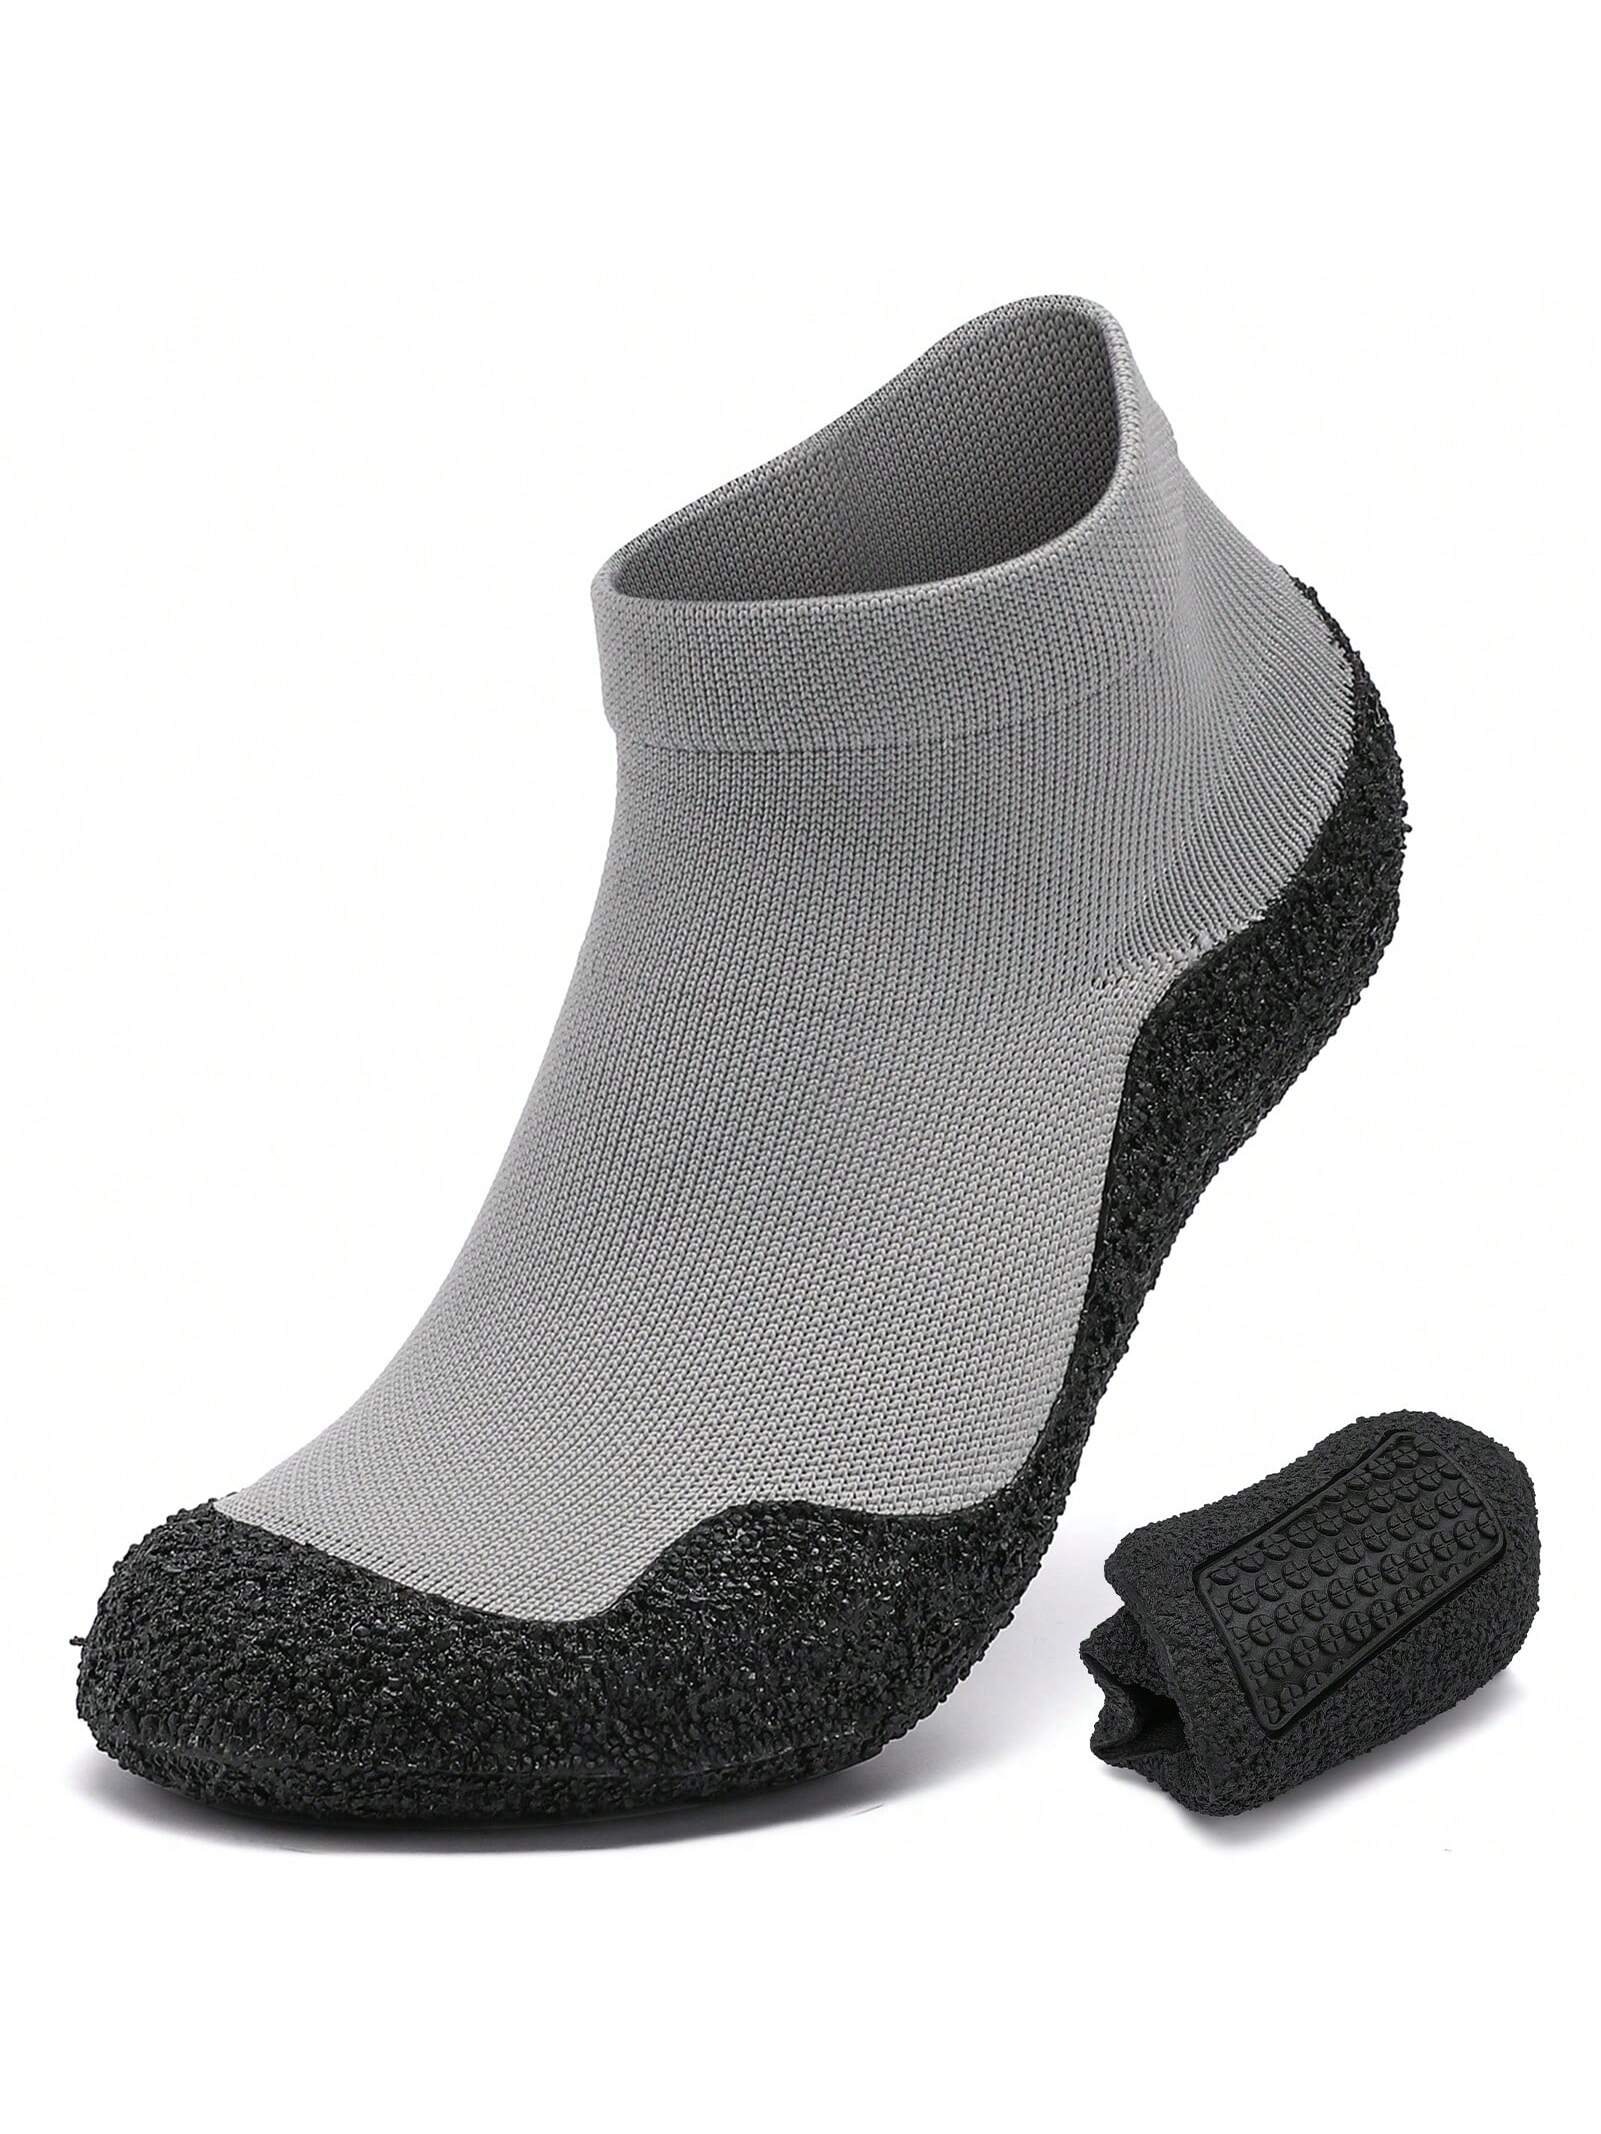 Минималистские туфли-носки для мужчин и женщин | Легкая обувь для ходьбы с нулевым падением | Многоцелевой, светло-серый